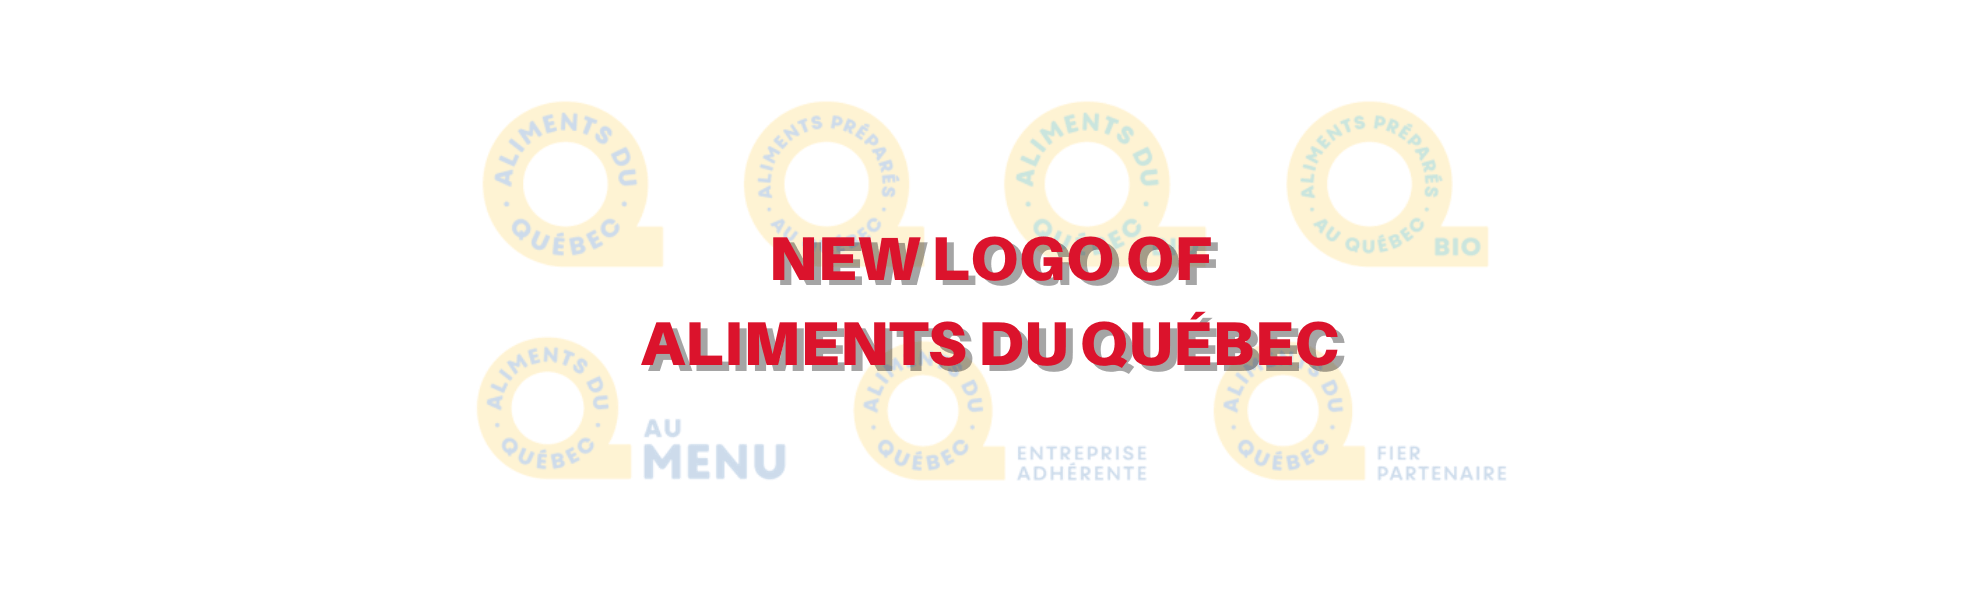 banner_logo_aliments_du_quebec